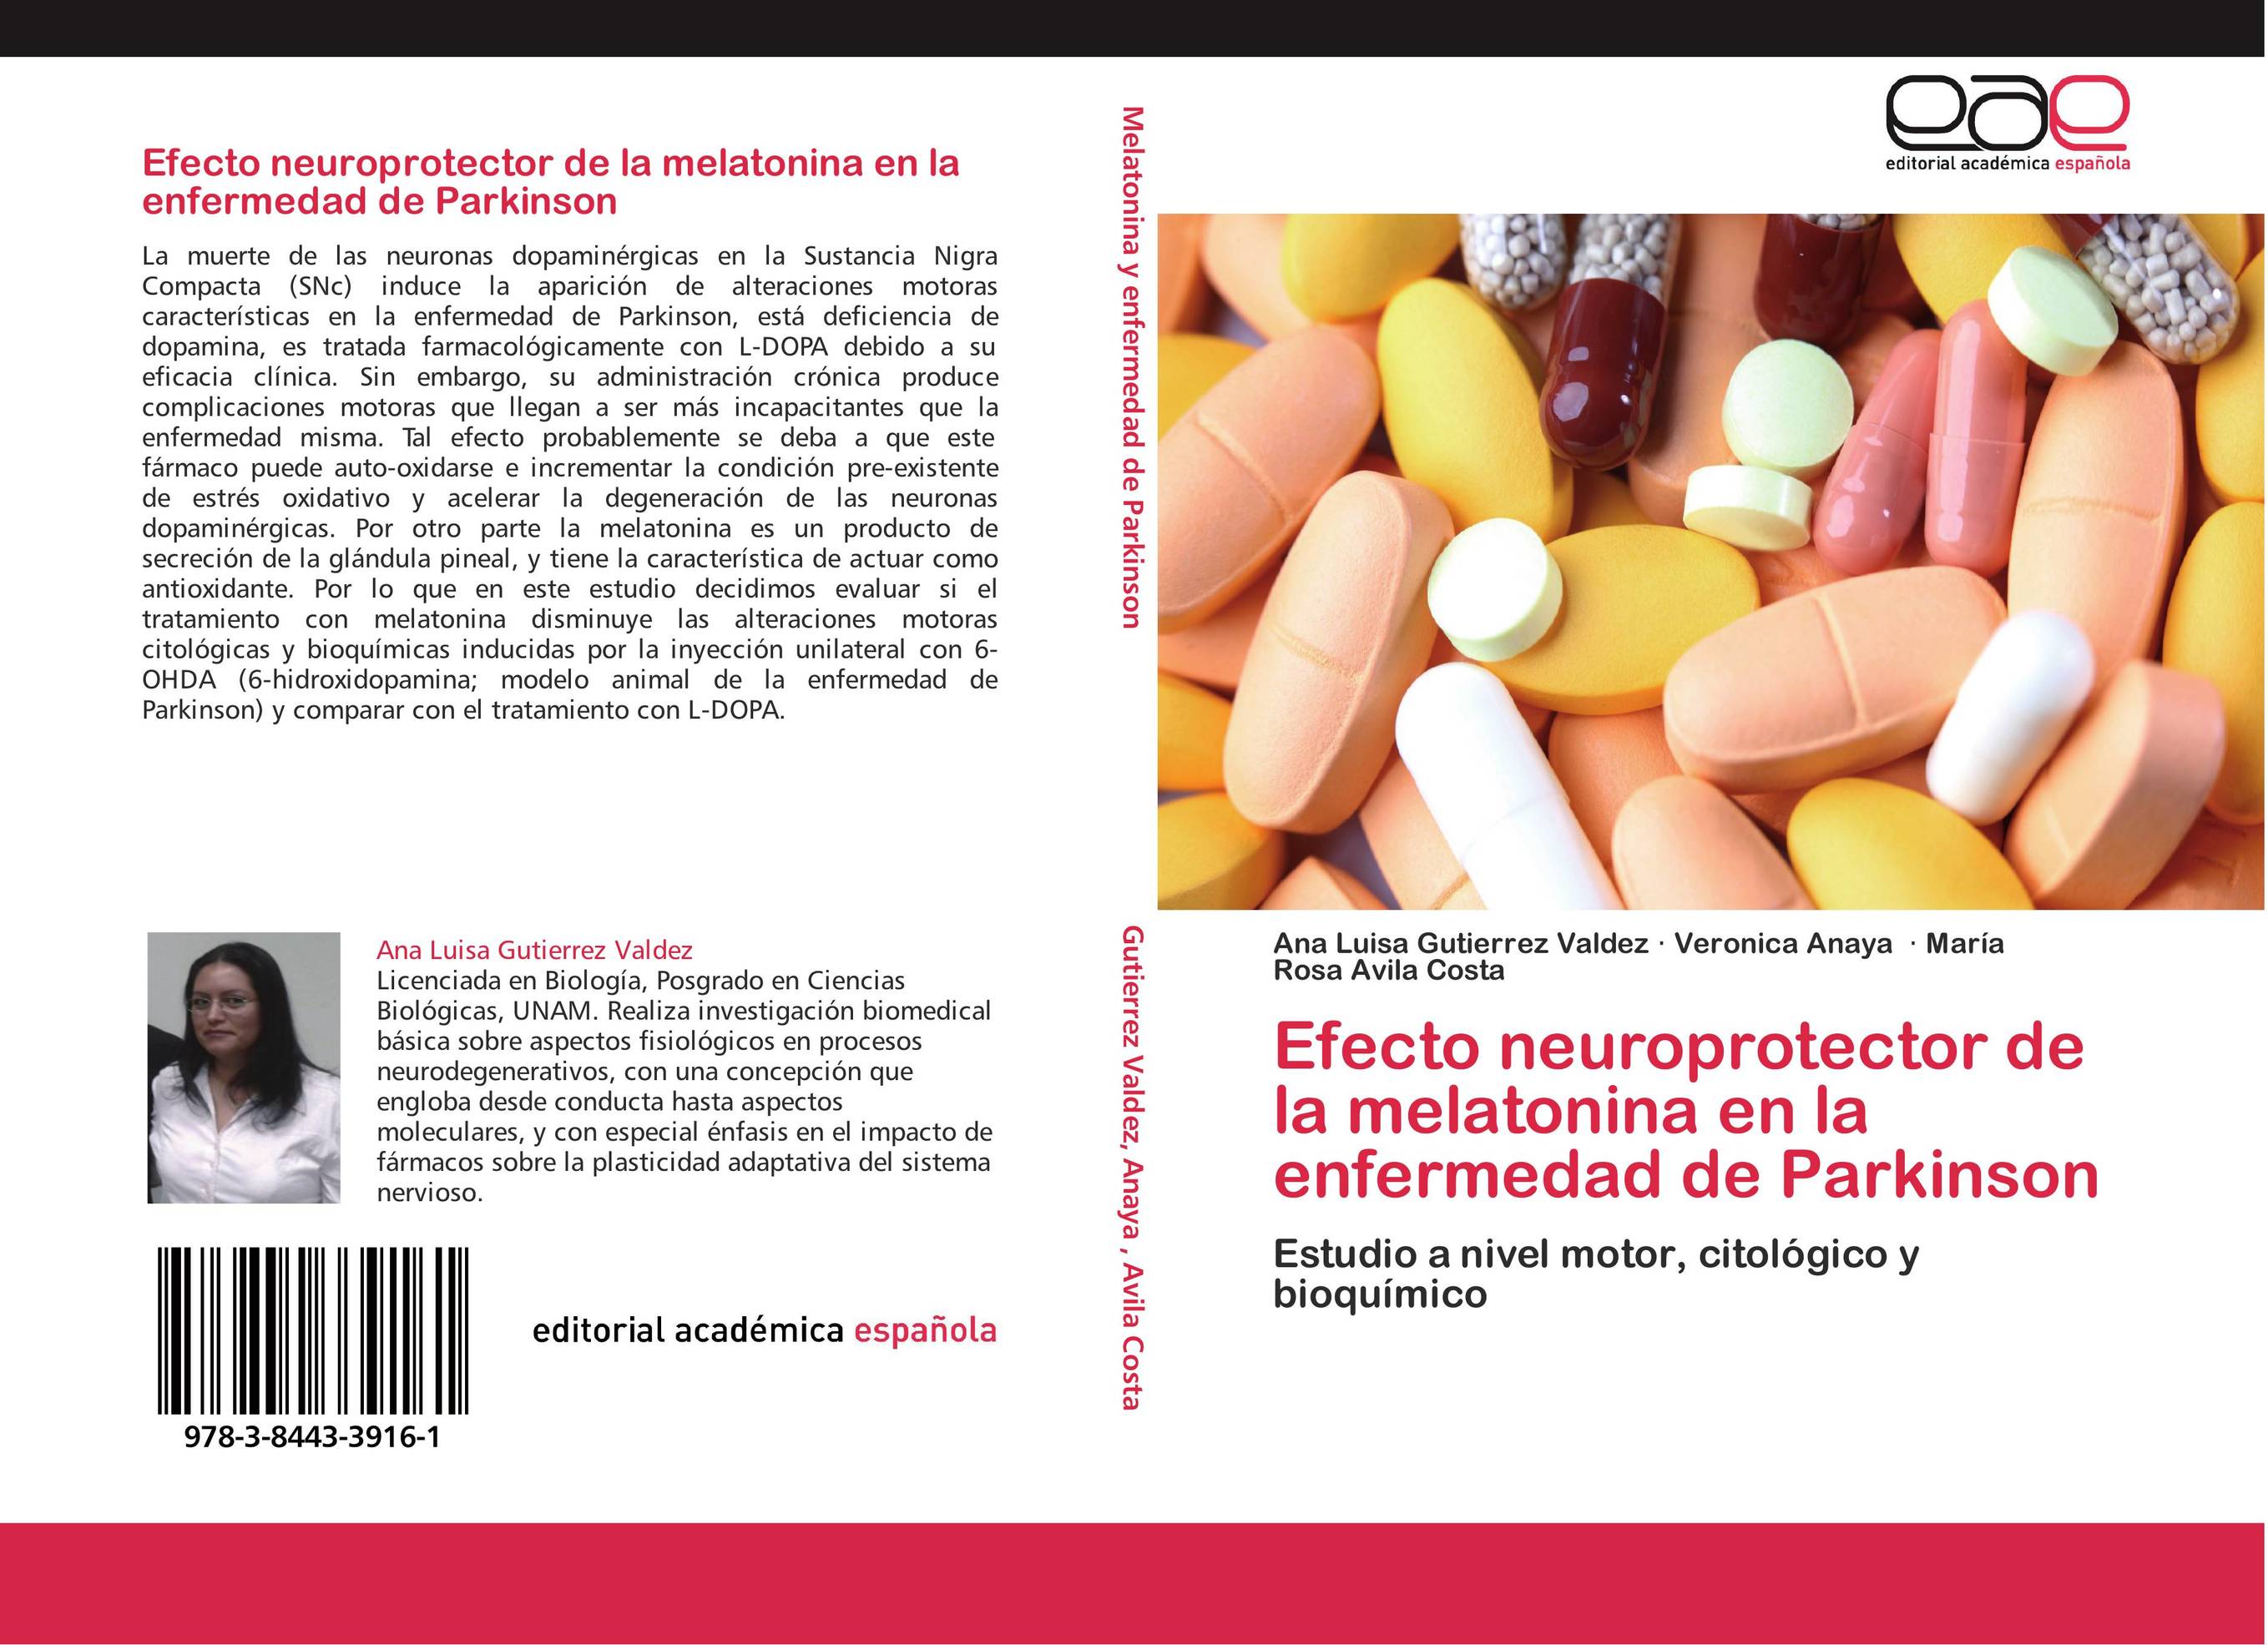 Efecto neuroprotector de la melatonina en la enfermedad de Parkinson